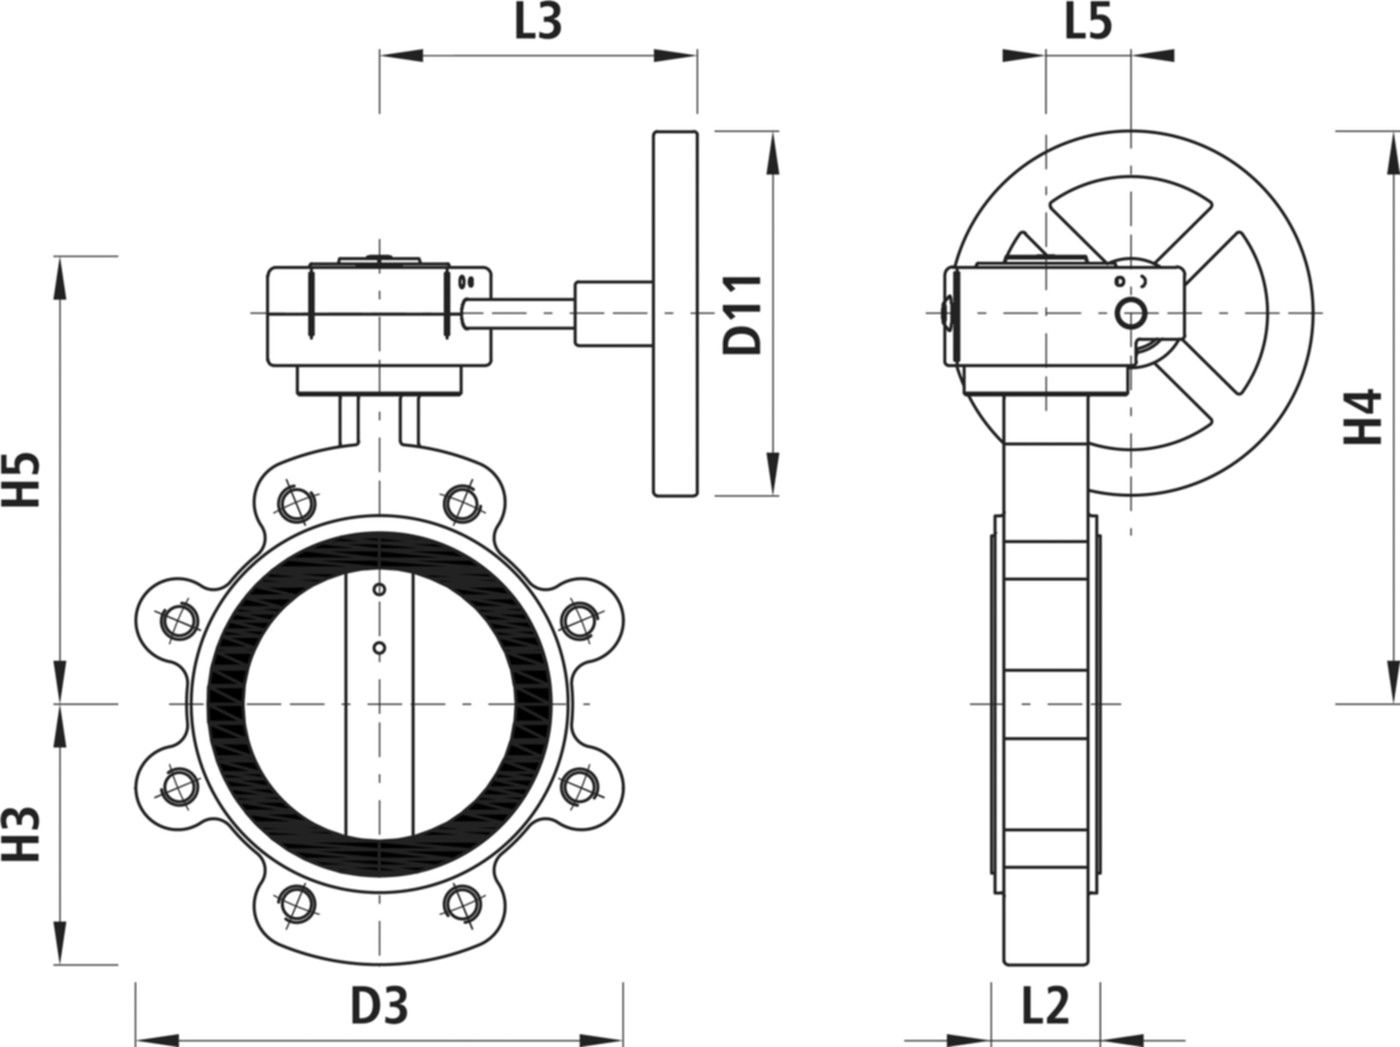 Absperrklappe mit Getriebe Typ LT 9937 für Gas DN 65 PN 16 - Hawle Absperrklappen